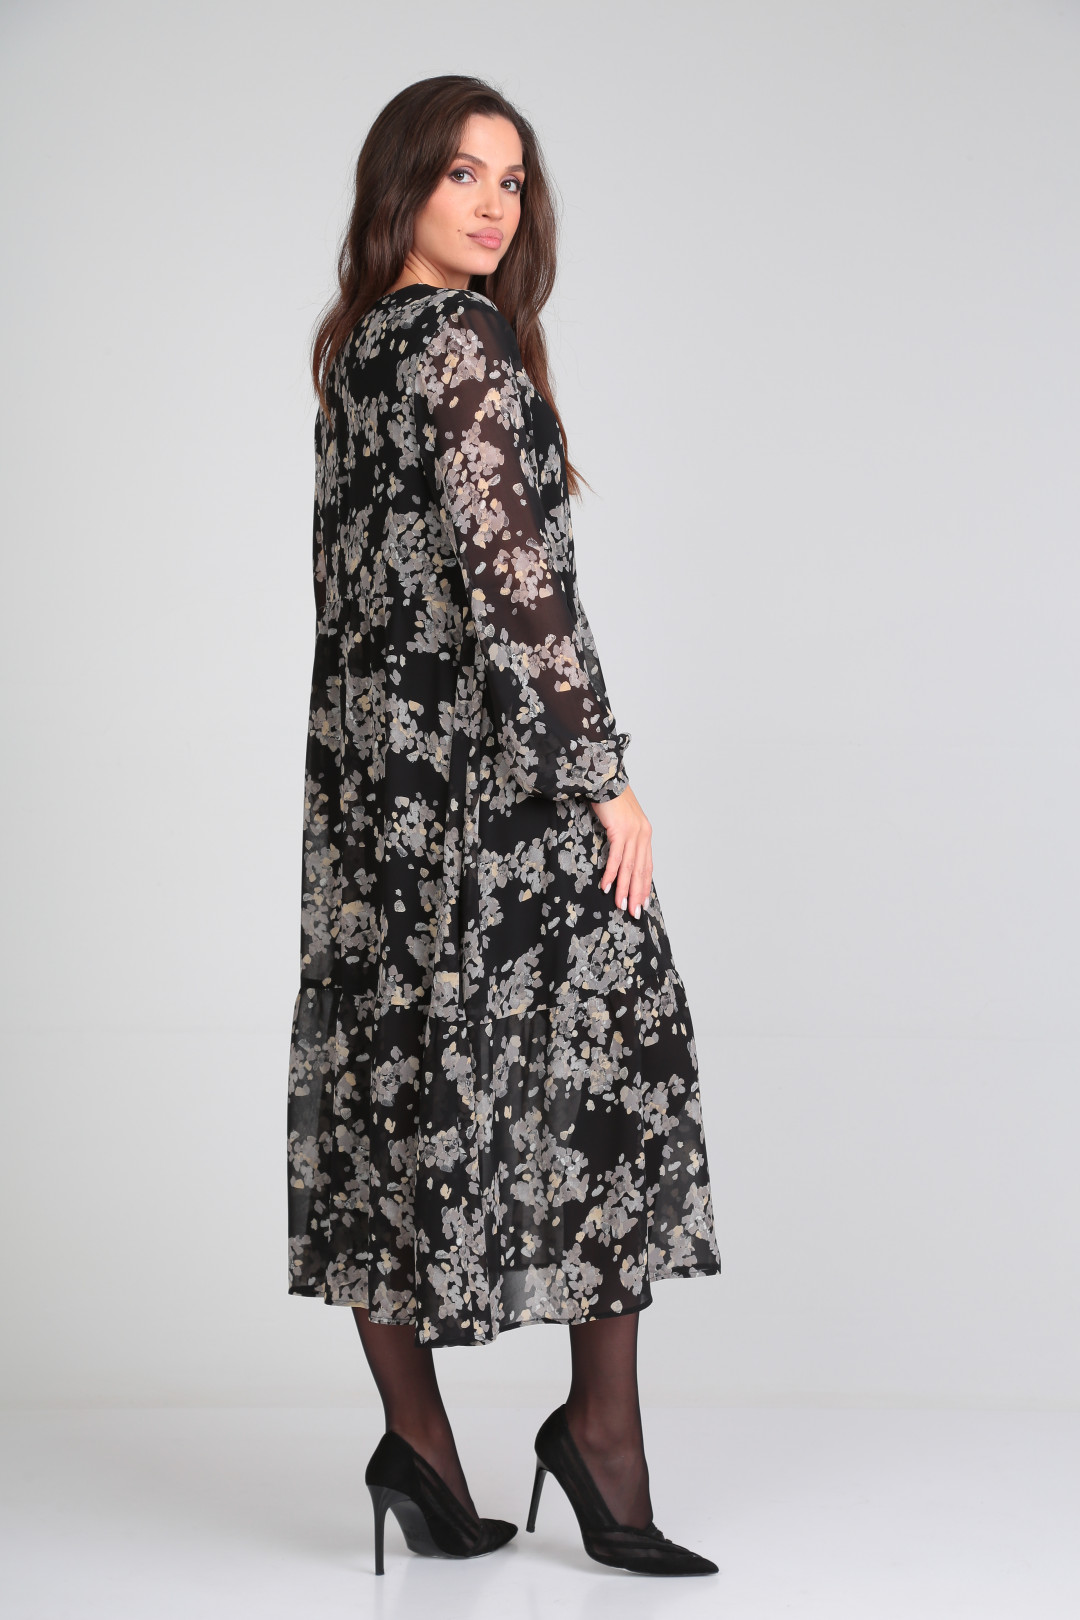 Платье Мишель Шик 2117 черный в цветочный​ принт​